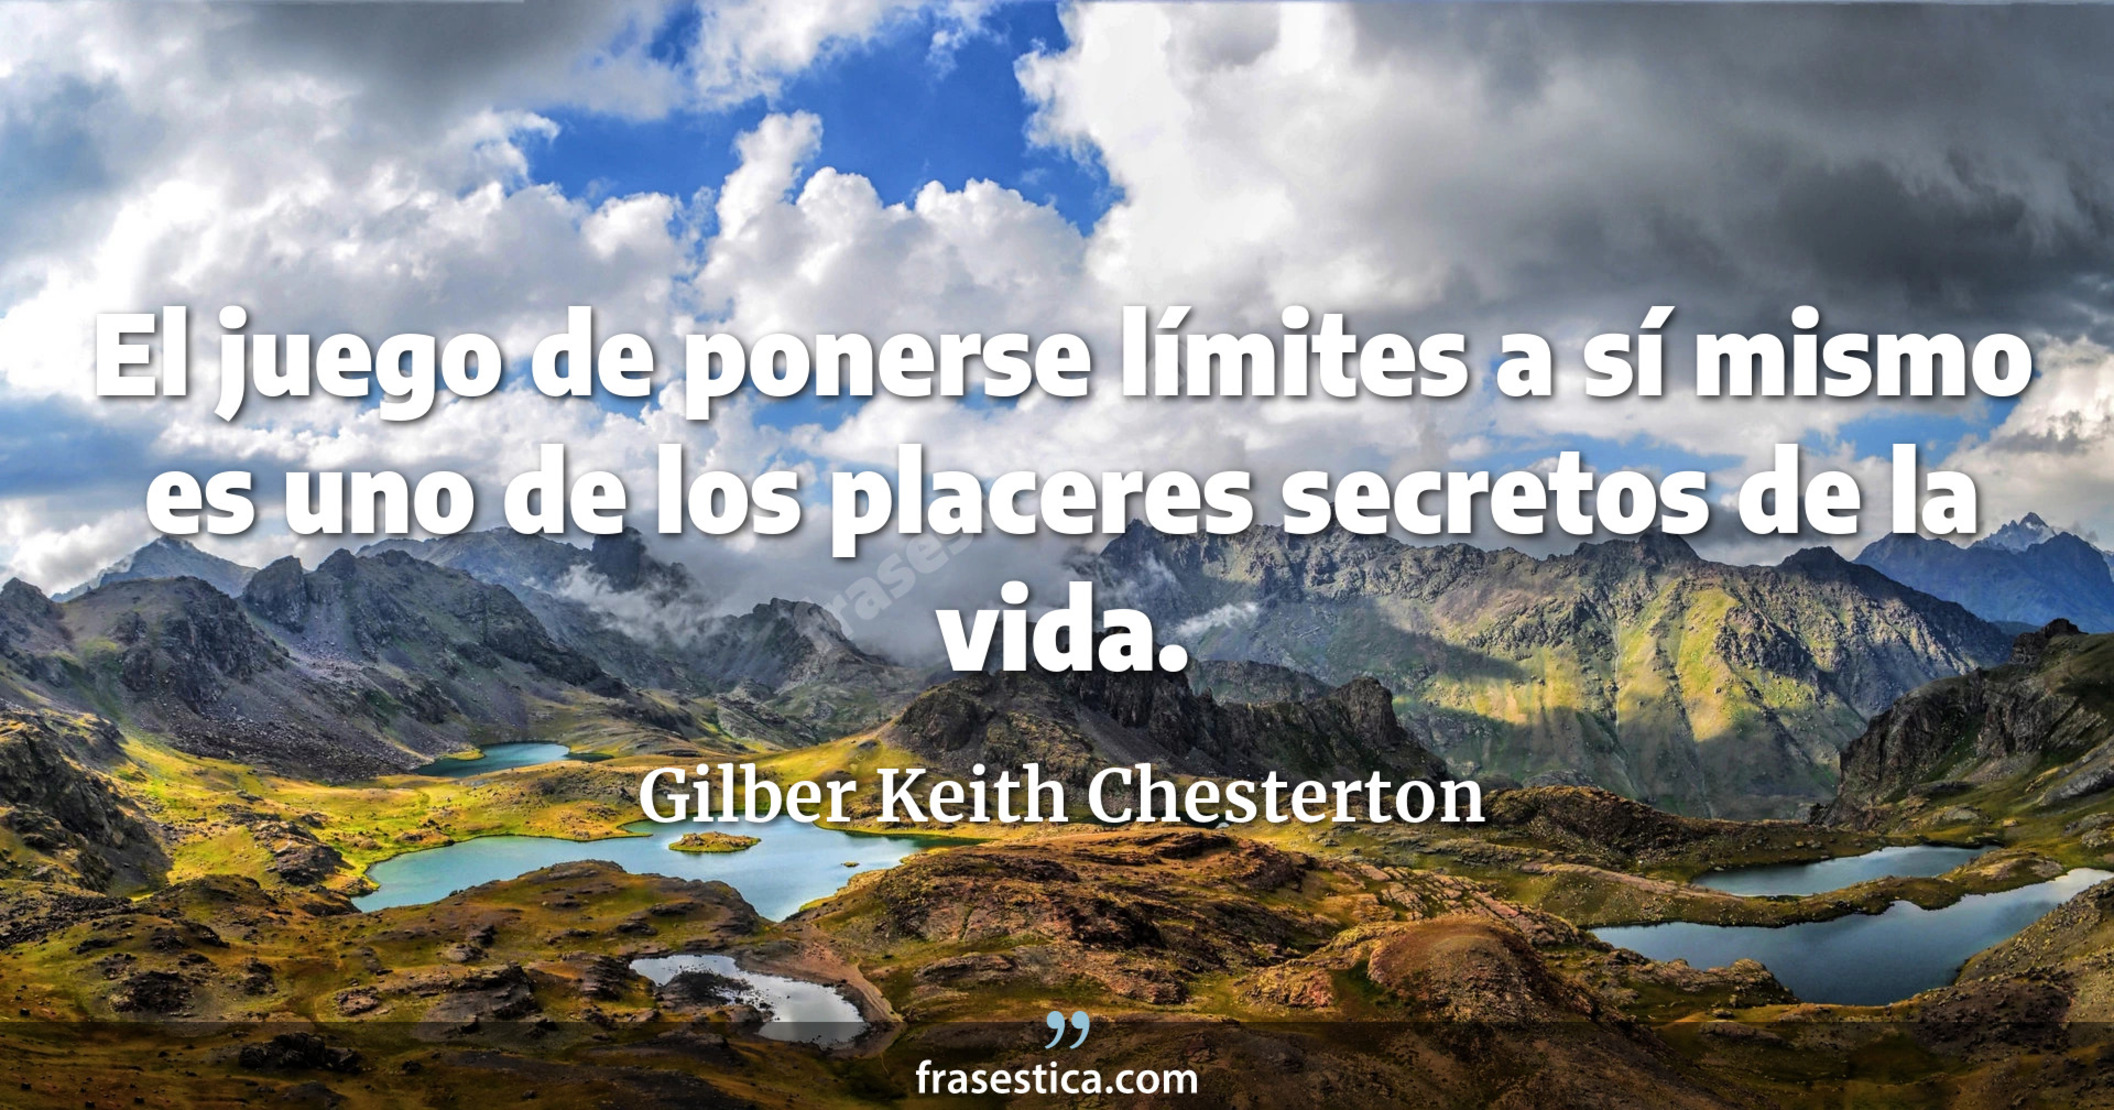 El juego de ponerse límites a sí mismo es uno de los placeres secretos de la vida. - Gilber Keith Chesterton